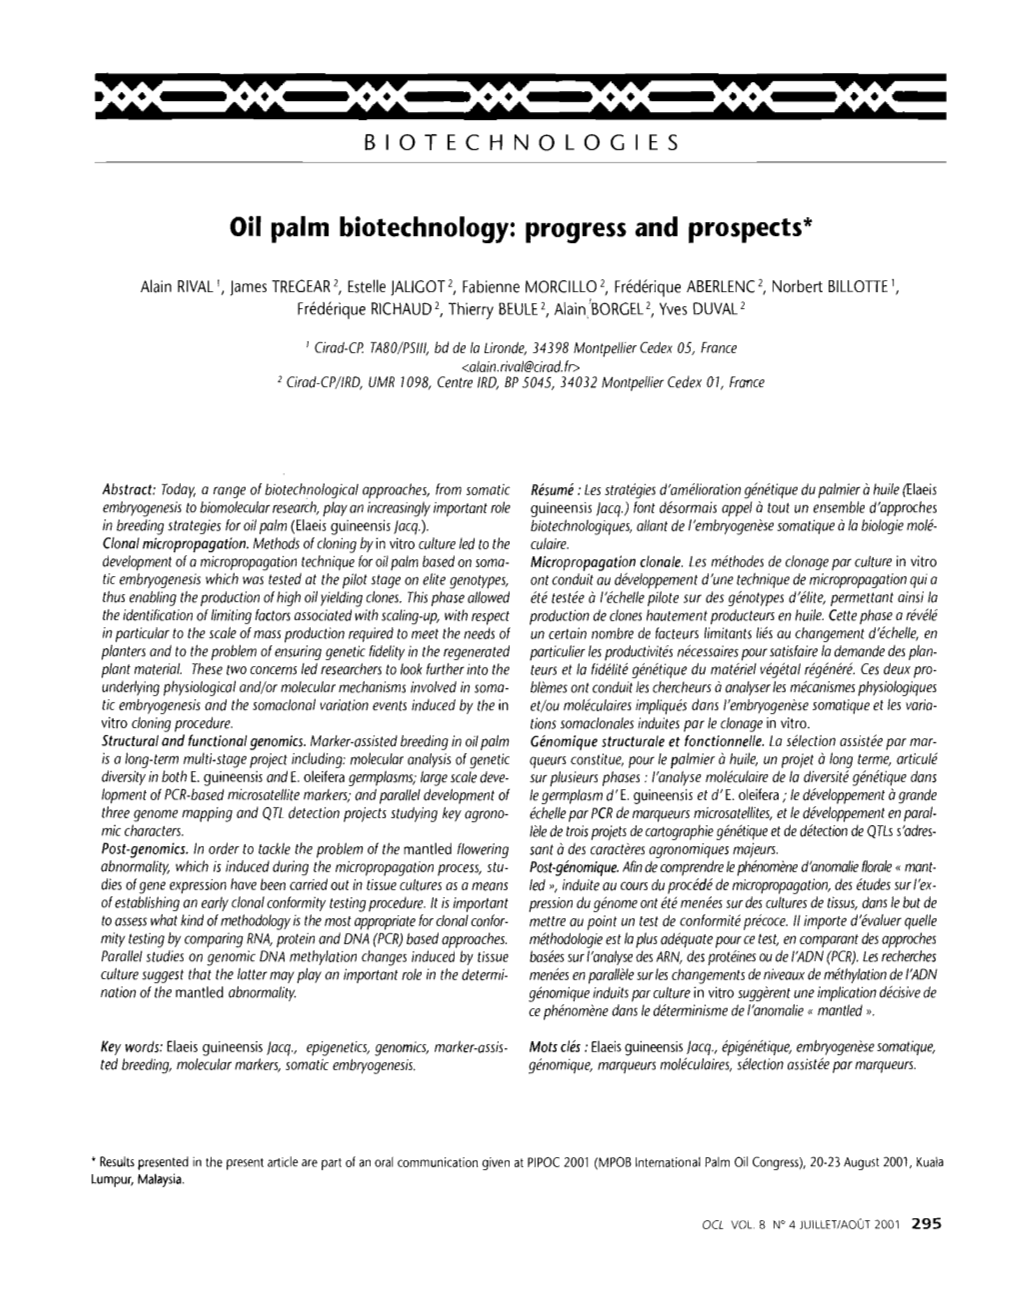 Oil Palm Biotechnology : Progress and Prospects